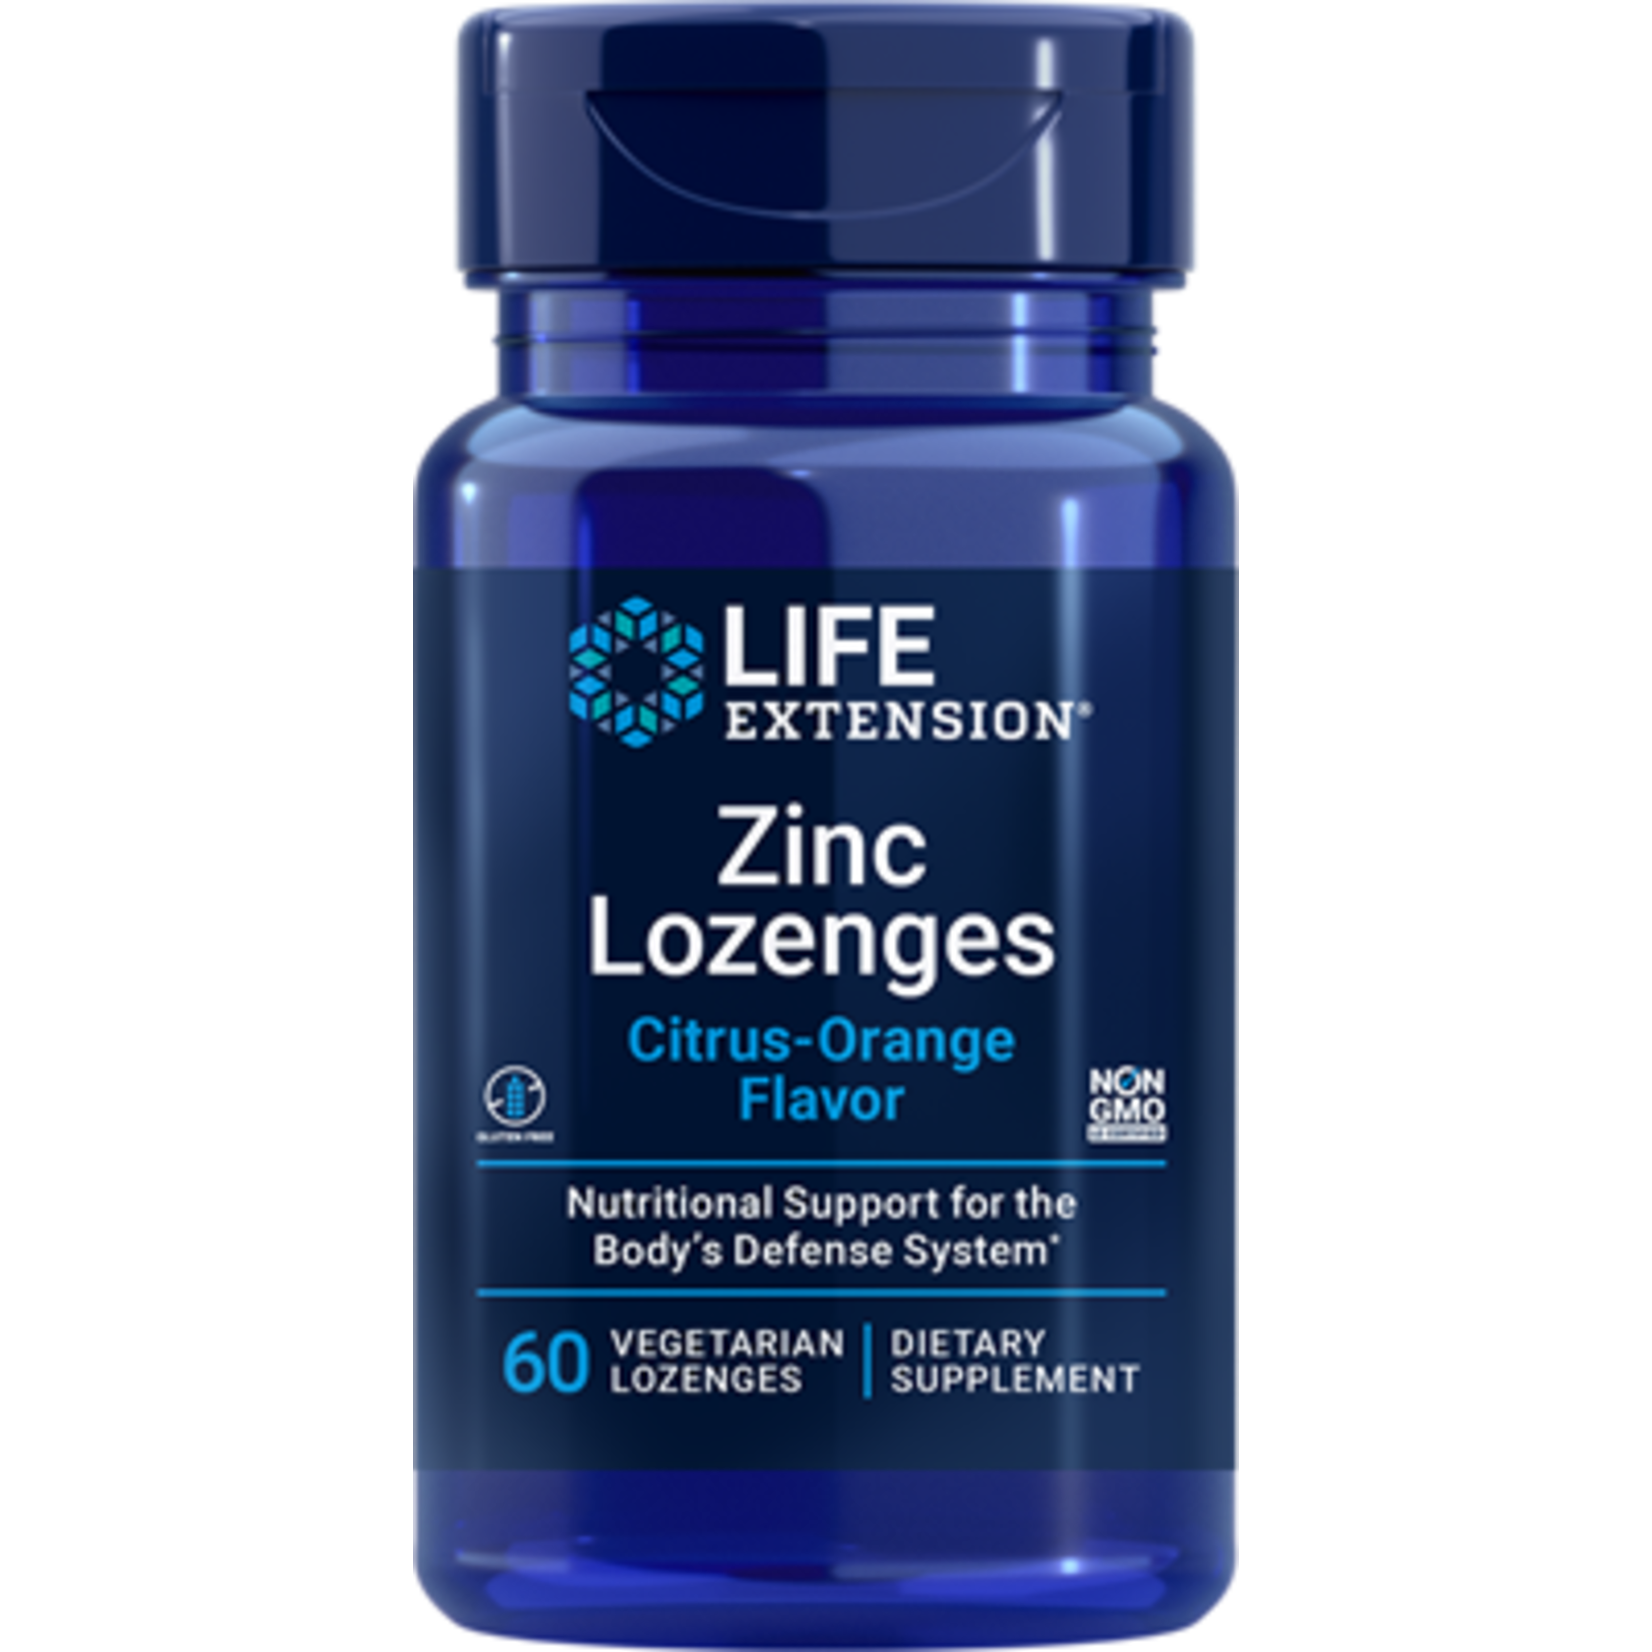 Life Extension Life Extension - Zinc Lozenges - 60 Lozenges